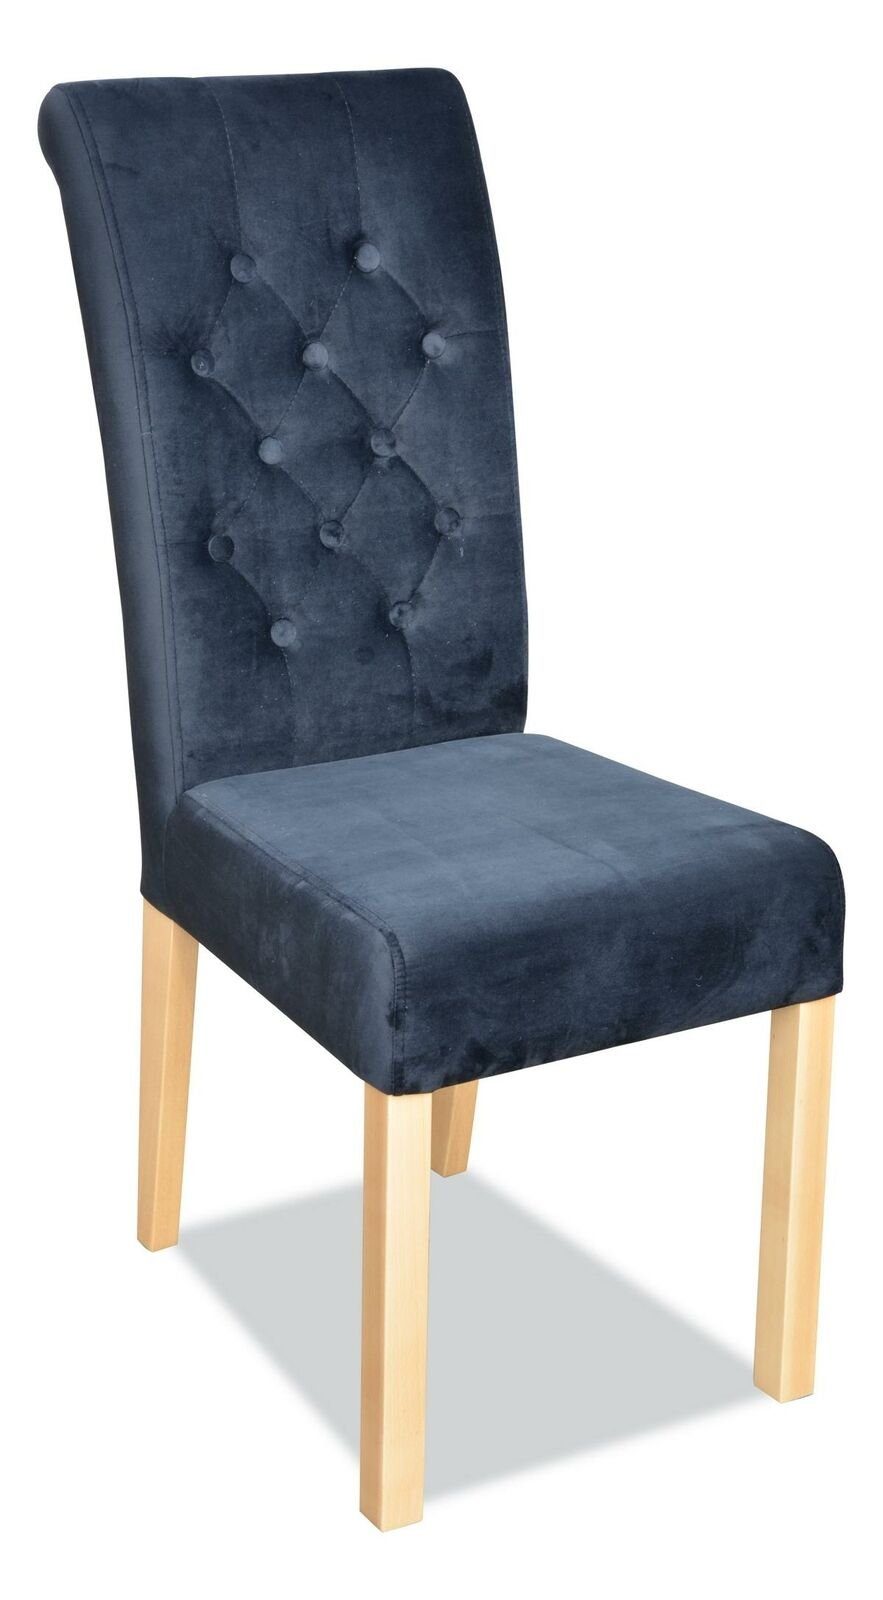 8x Stuhl, Dunkelblau Stuhl JVmoebel Holz Chesterfield Lehn Textil Sessel Design Klassische Polster Stühle